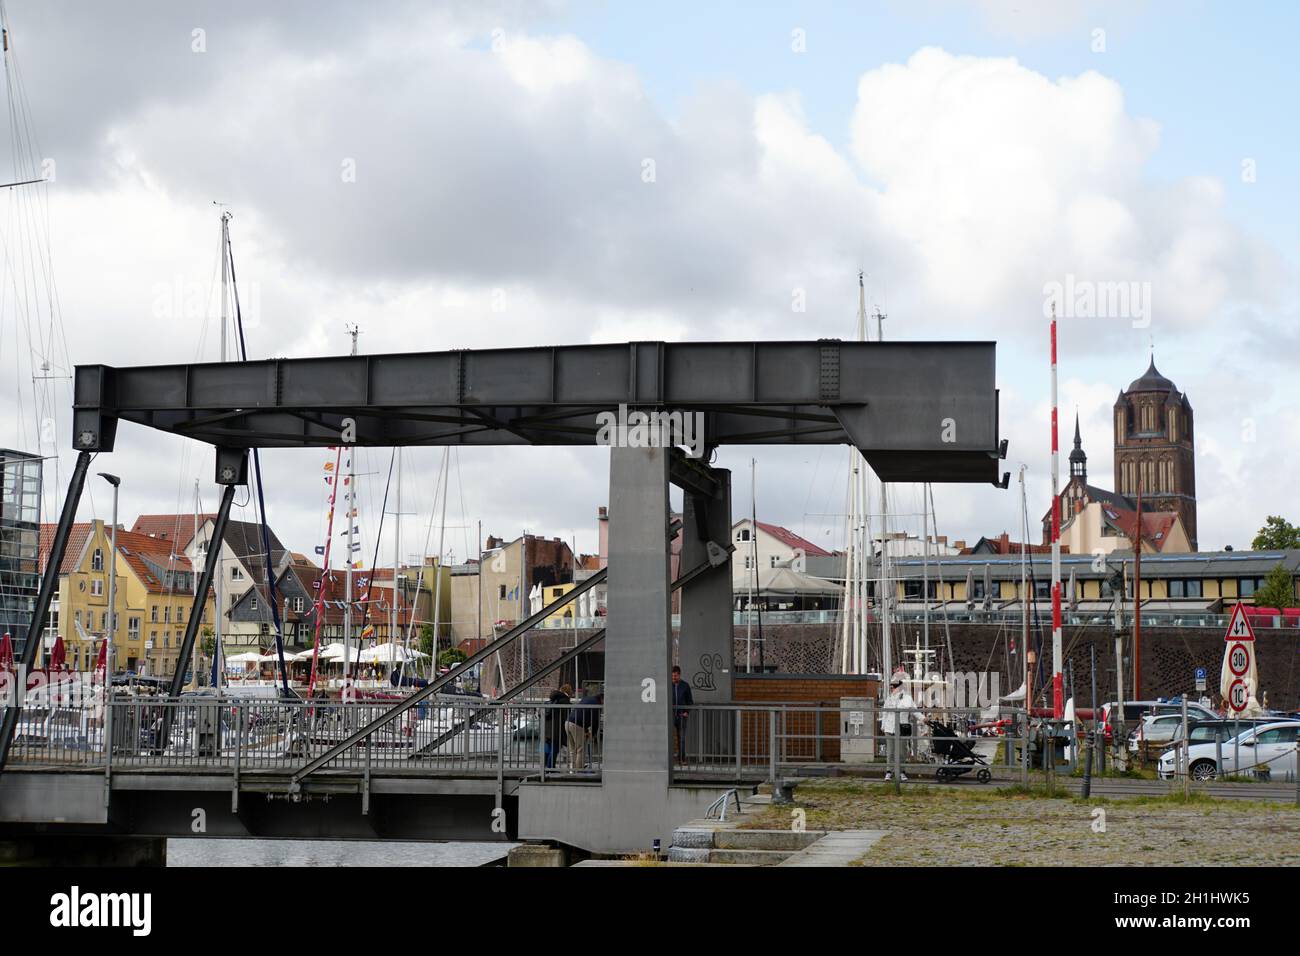 Querkanalbrücke - Zugbrücke am Yachthafen, Stralsund, Mecklenburg-Vorpommern, Deutschland Stock Photo